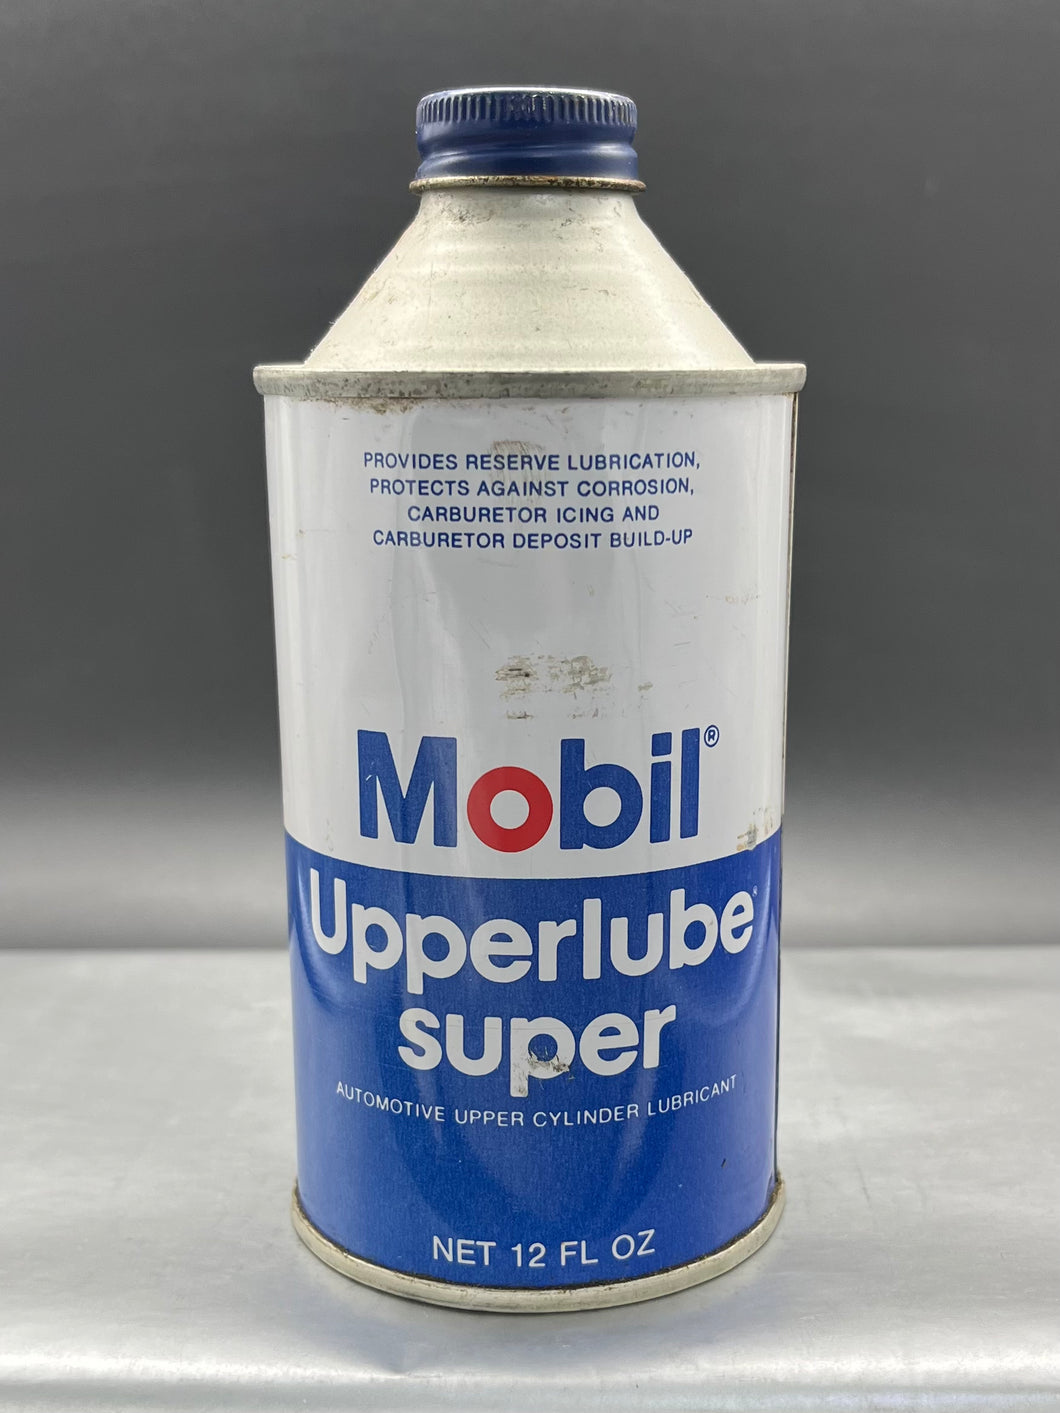 Mobil Upperlube Super Tin 12 fl oz